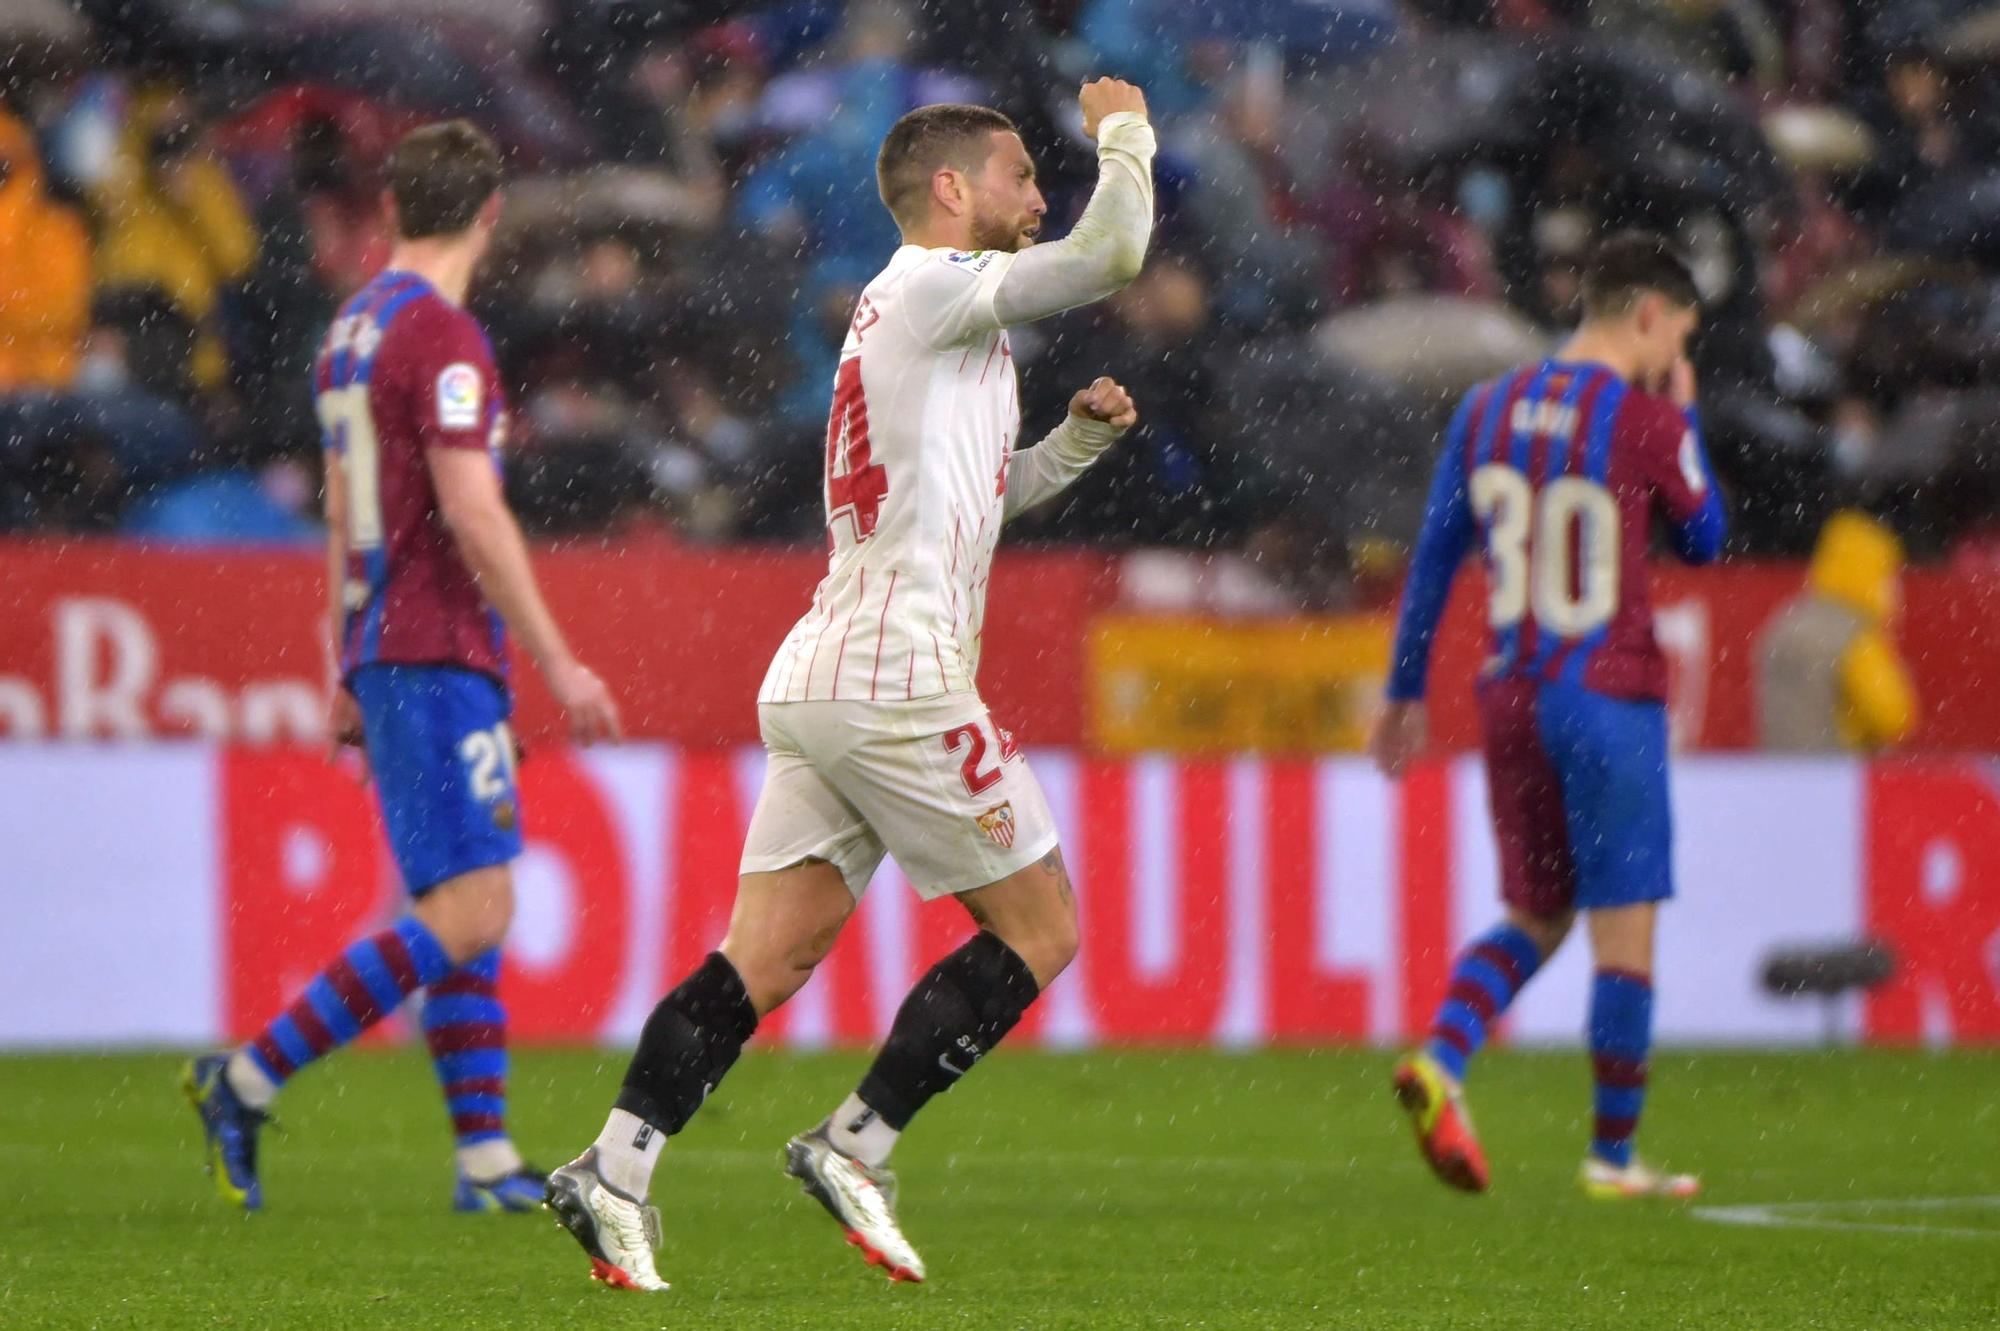 El 'Papu' Gómez celebra su gol ante el Barça